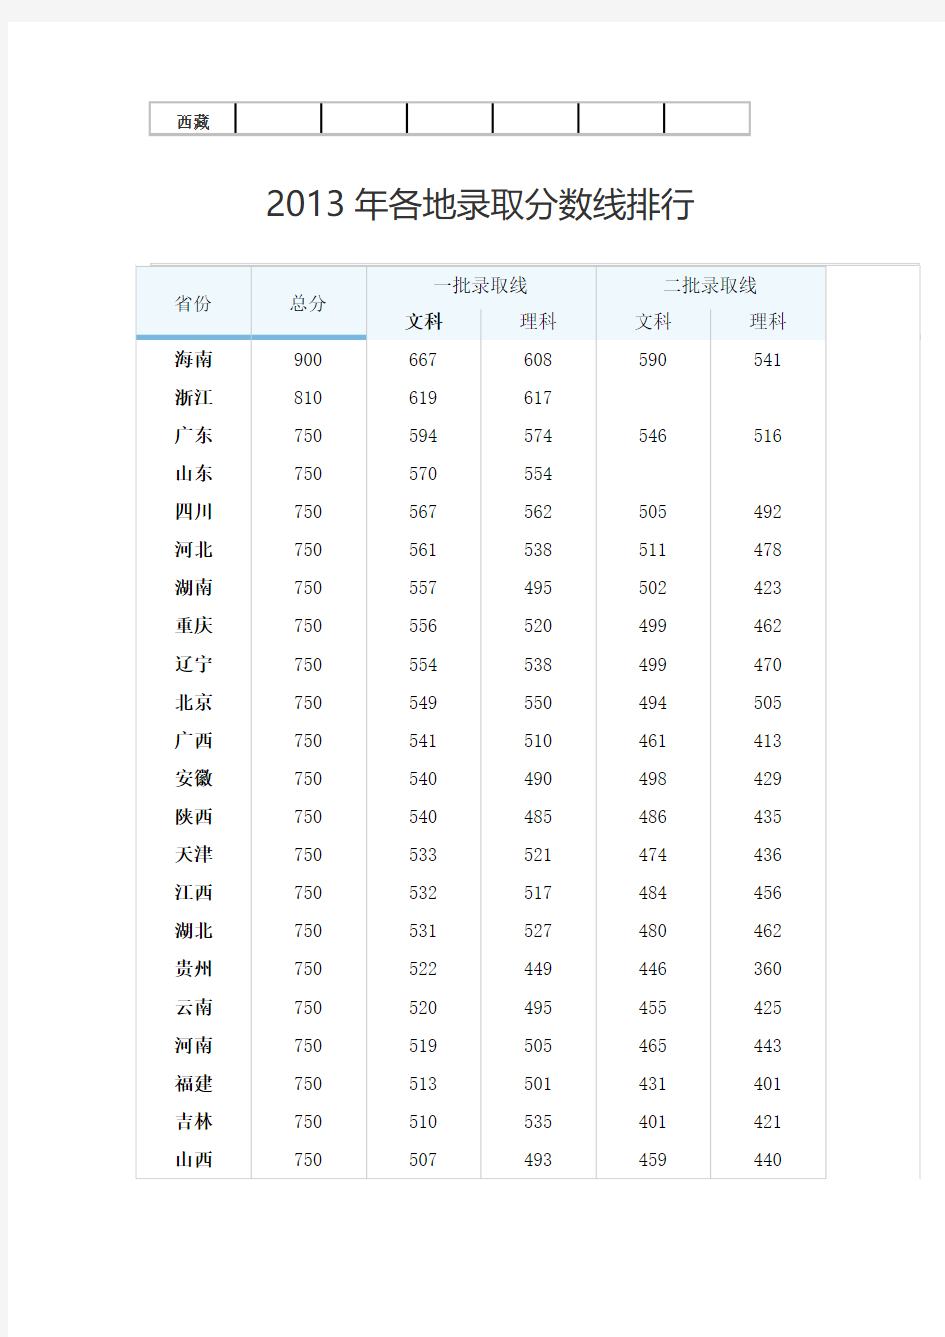 2014全国高考分数线排名表